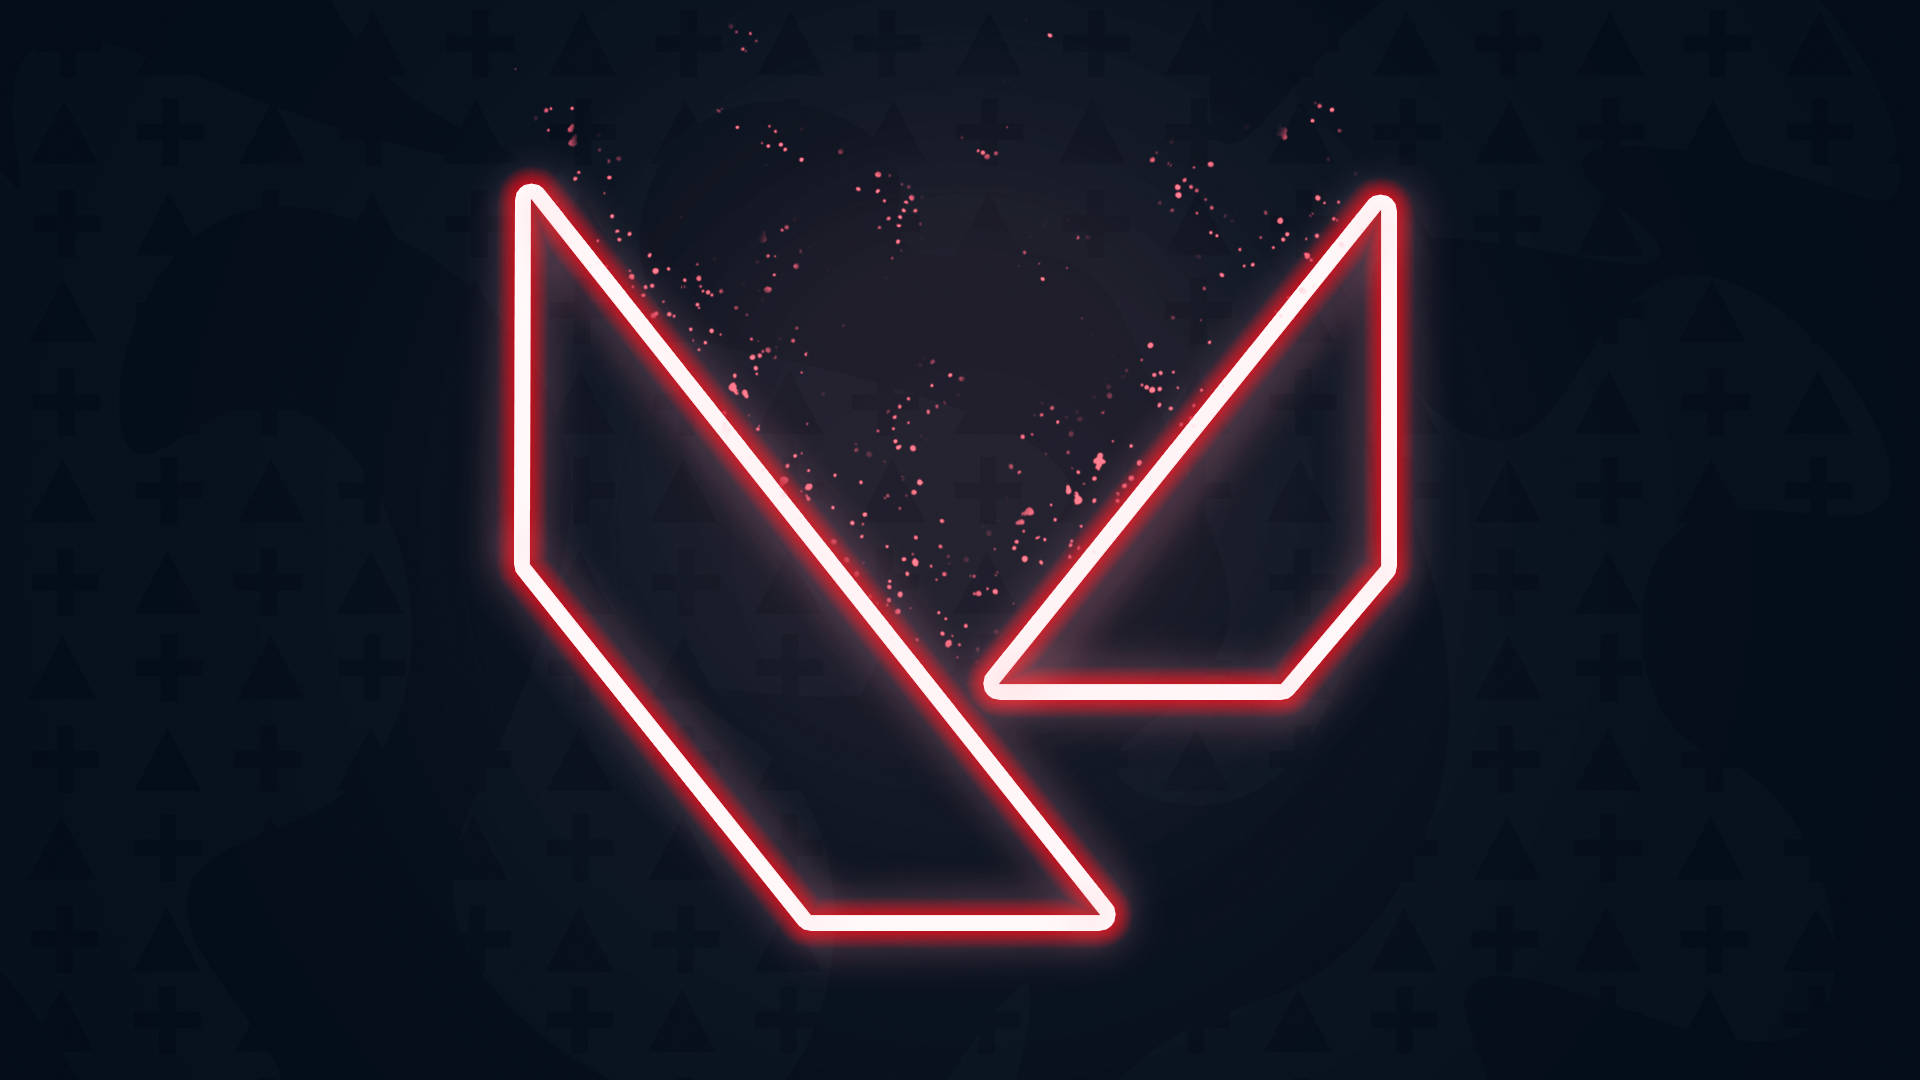 Logotipominimalista Valorant Em Neon Vermelho. Papel de Parede